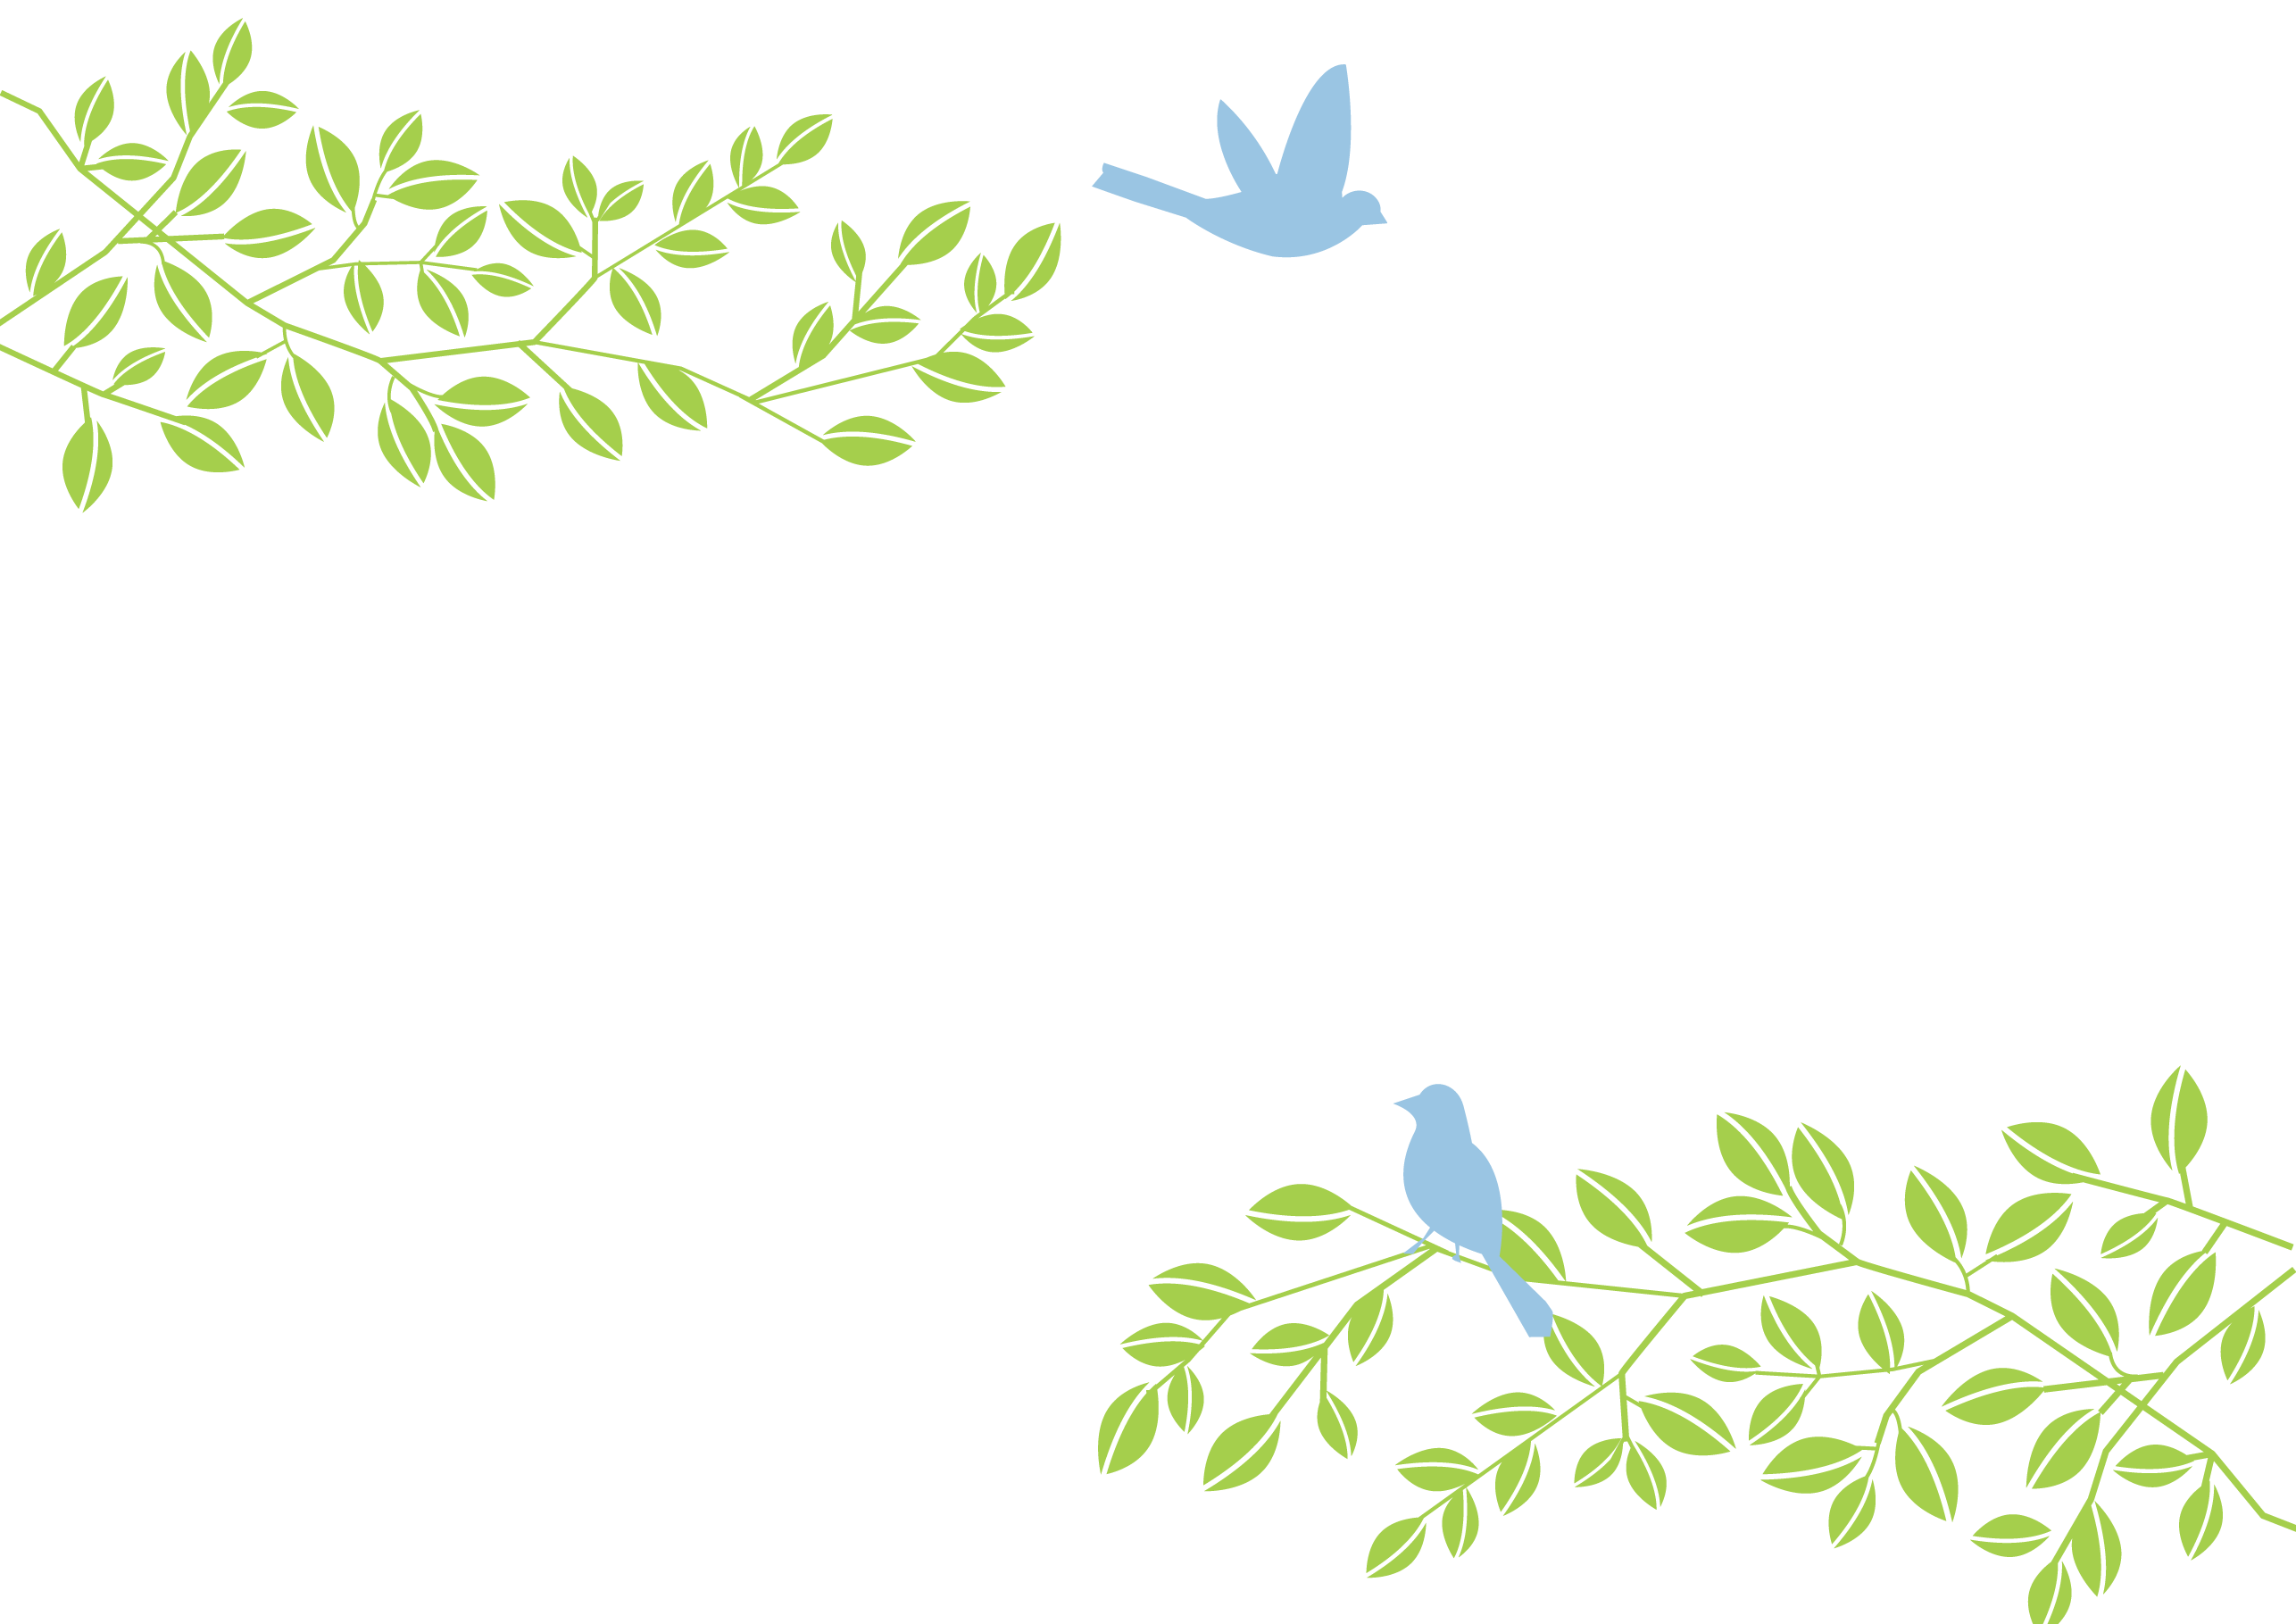 鳥と葉っぱのシンプルなパワーポイントの無料テンプレートをダウンロード 無料ダウンロード テンプレルン 無料ダウンロード テンプレルン